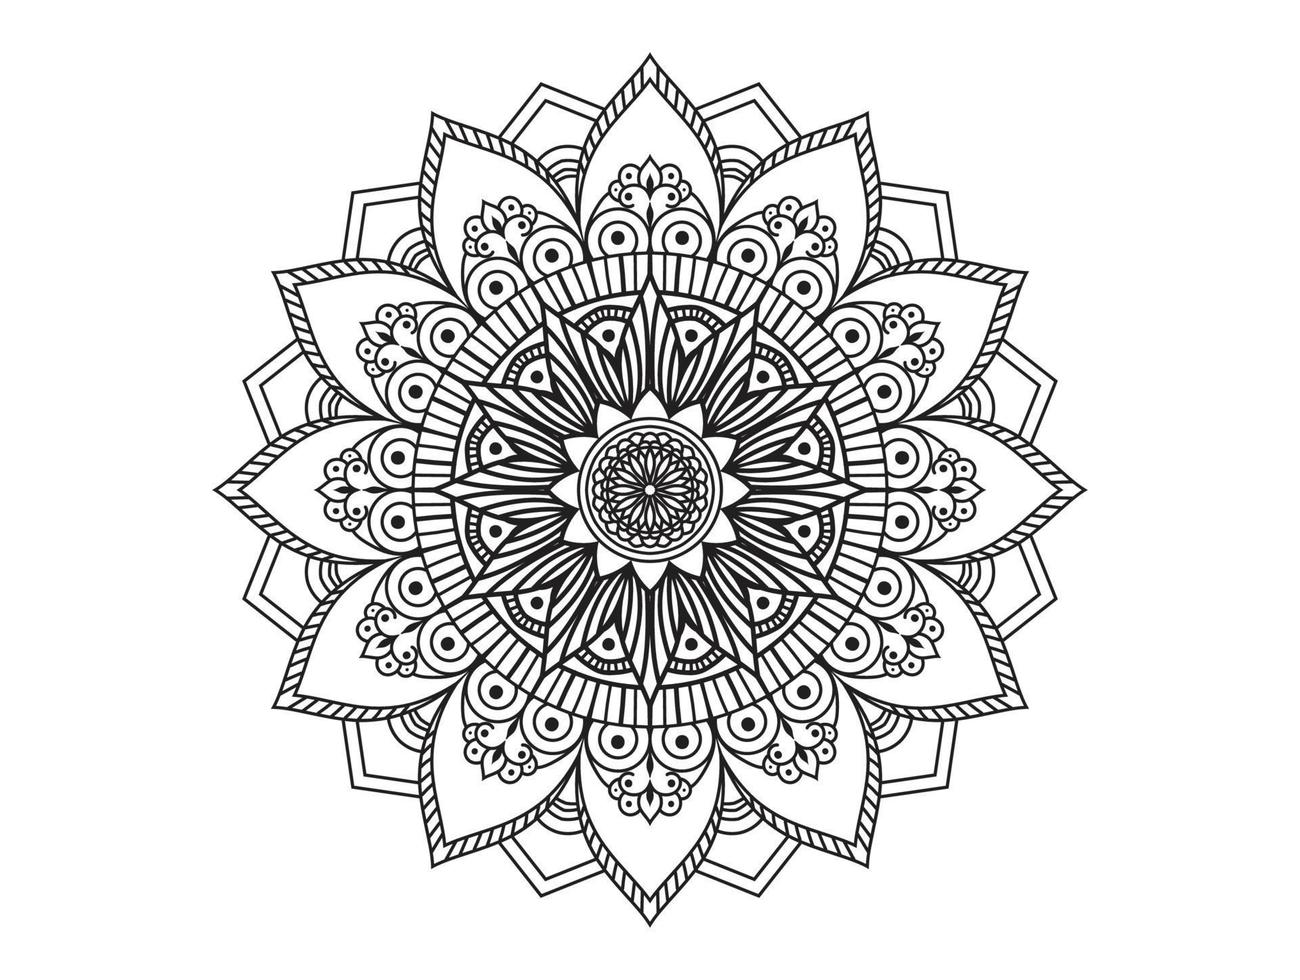 padrão de círculo em forma de mandala para henna, mehndi, tatuagens, ornamentos decorativos em estilo étnico oriental, páginas de livros para colorir. vetor